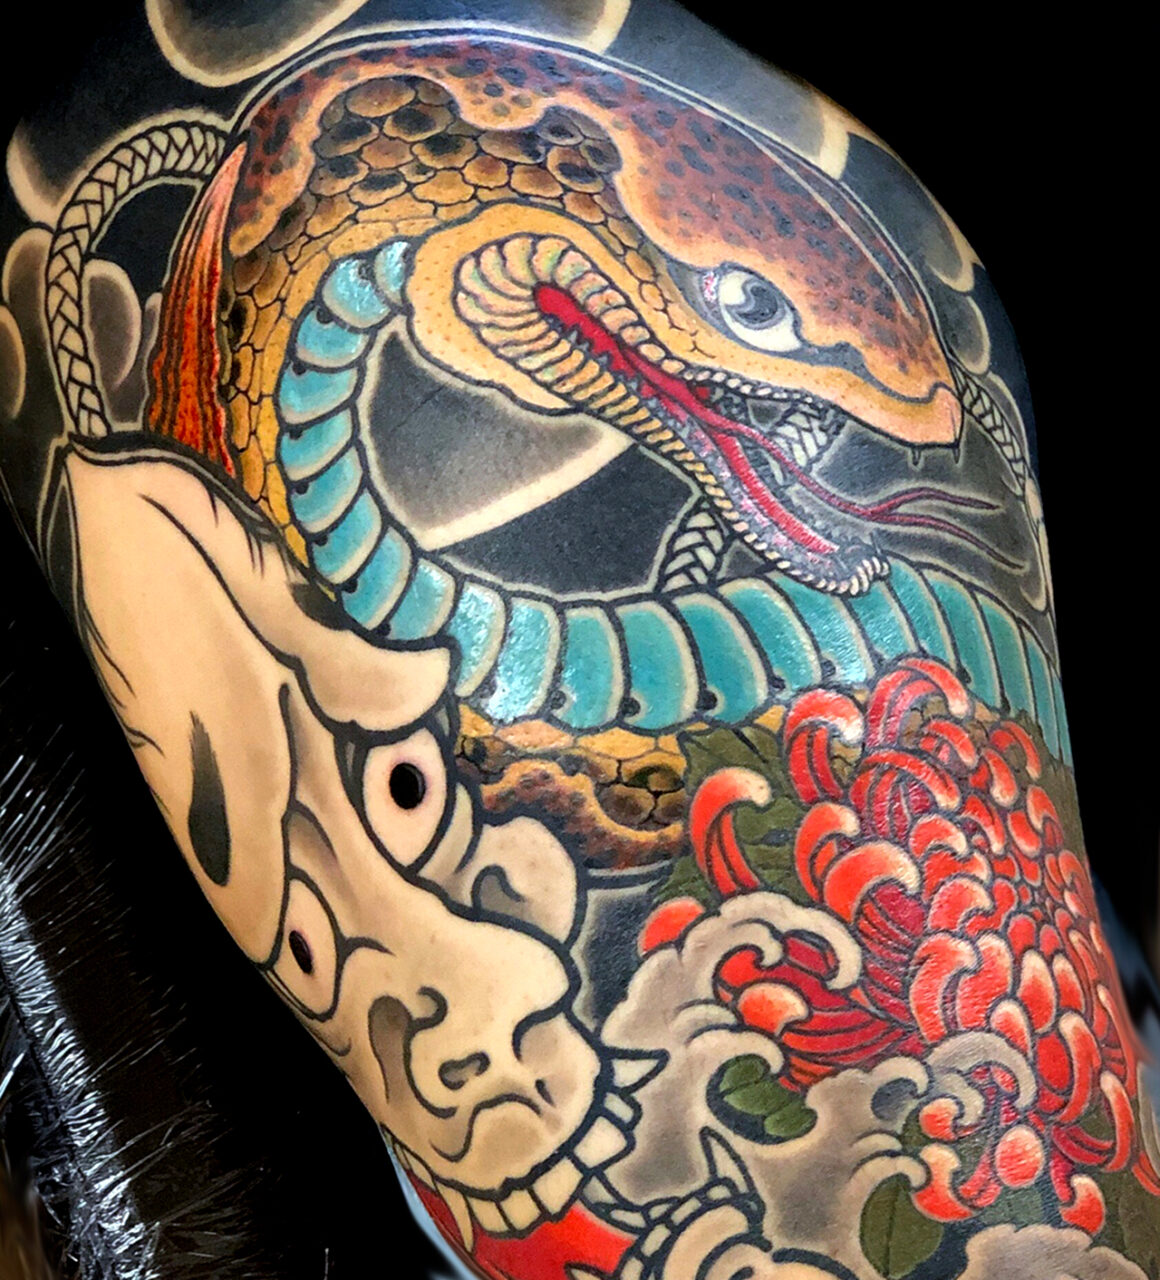 Tebori tattoo artists